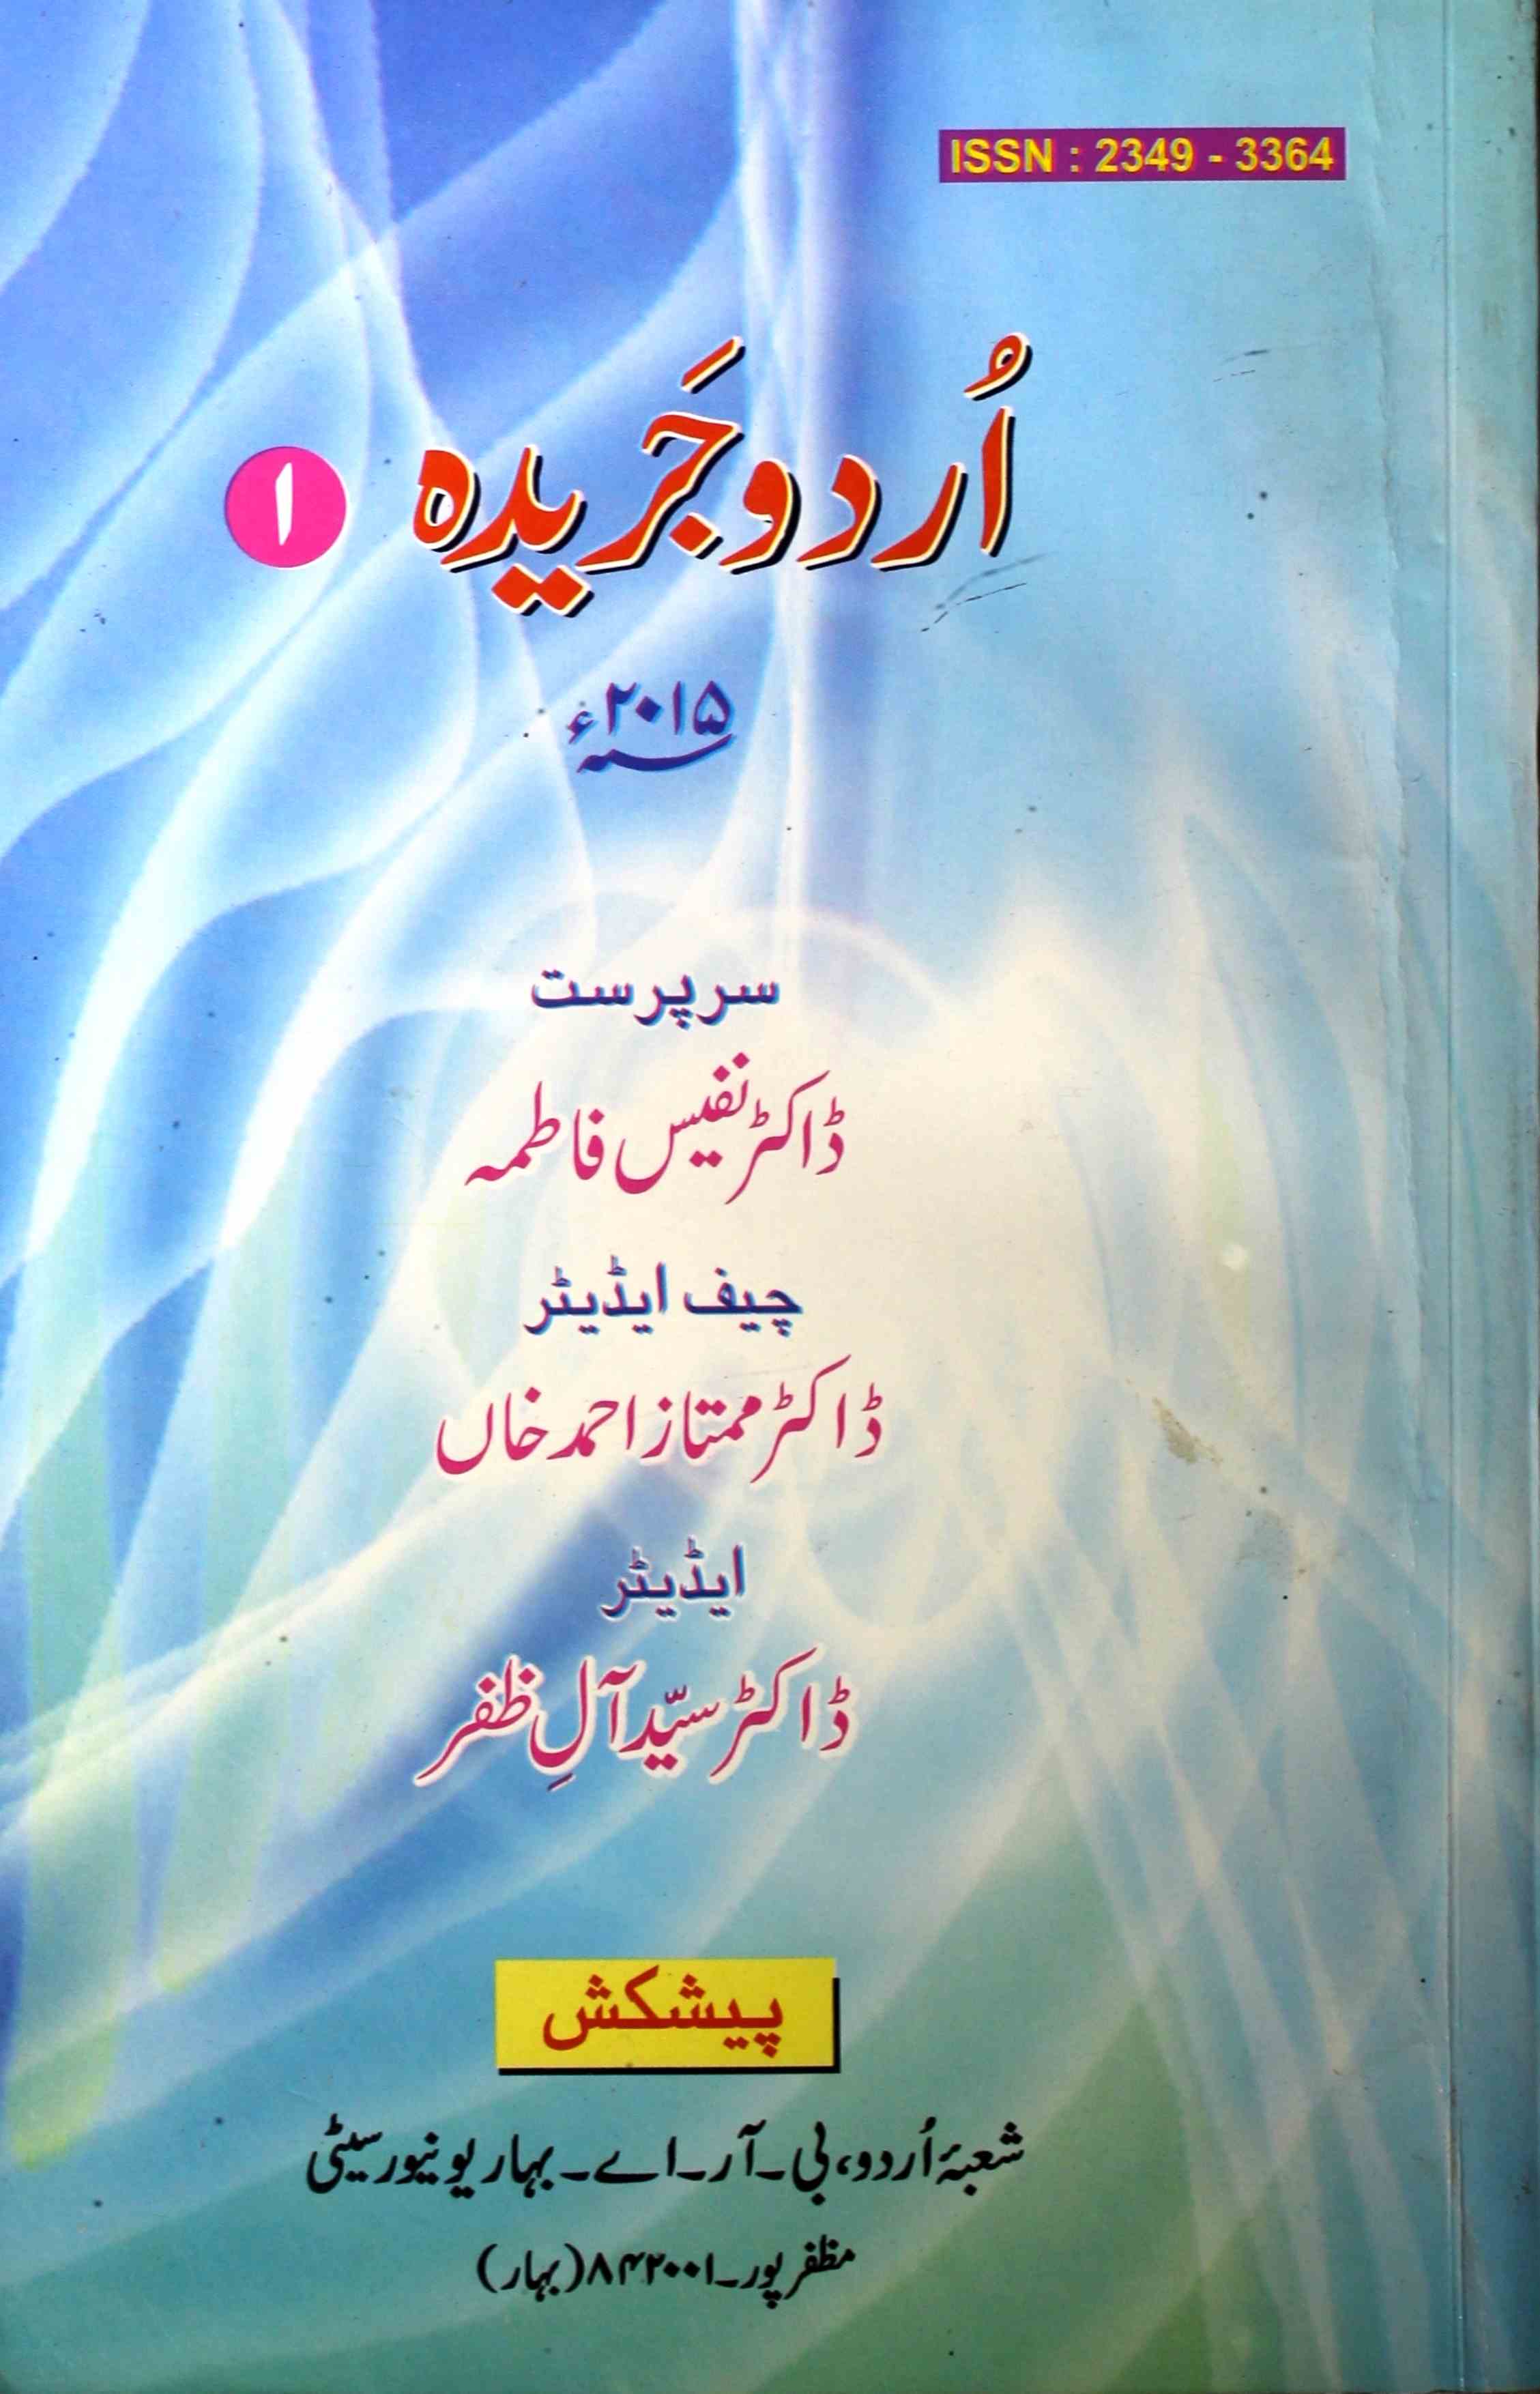 Urdu Jareeda